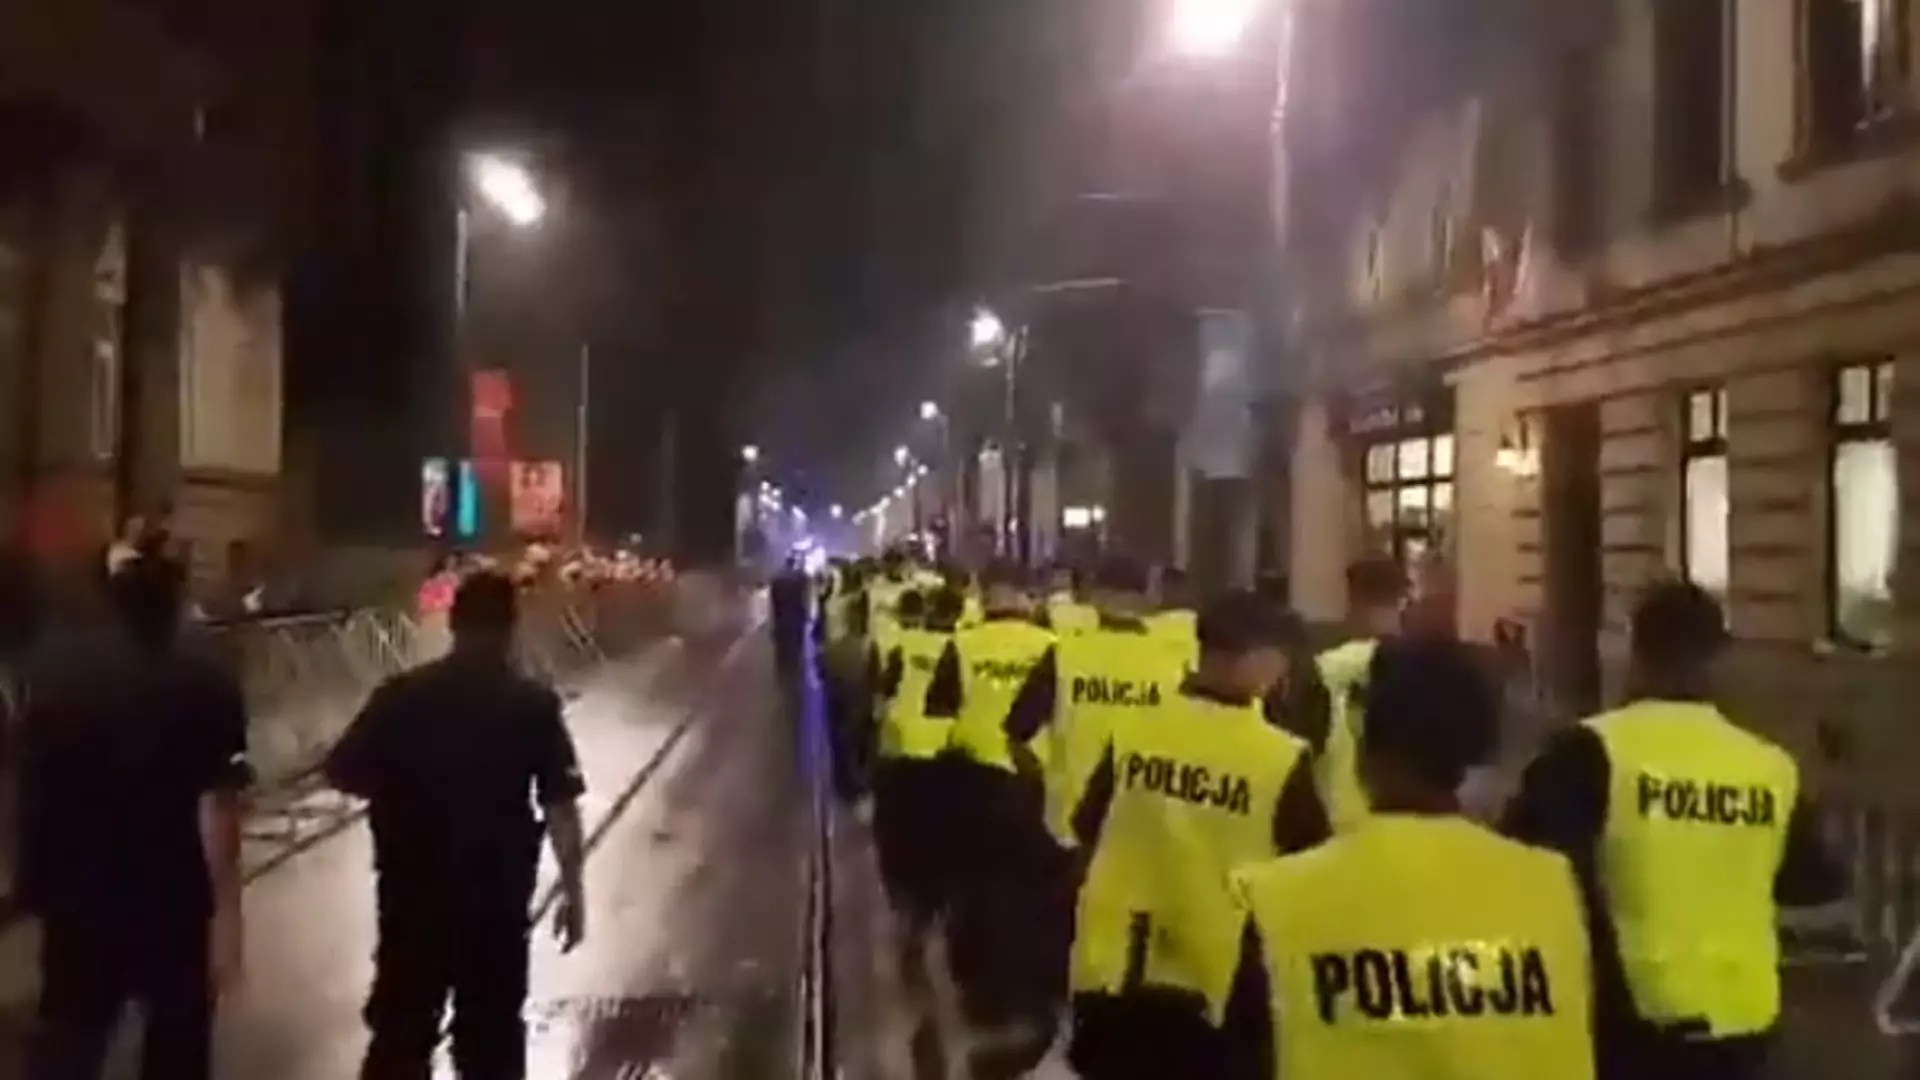 Policja wychodzi na ulicę i… dostaje oklaski. To wideo pokazuje, że coś się jednak w Polsce zmienia